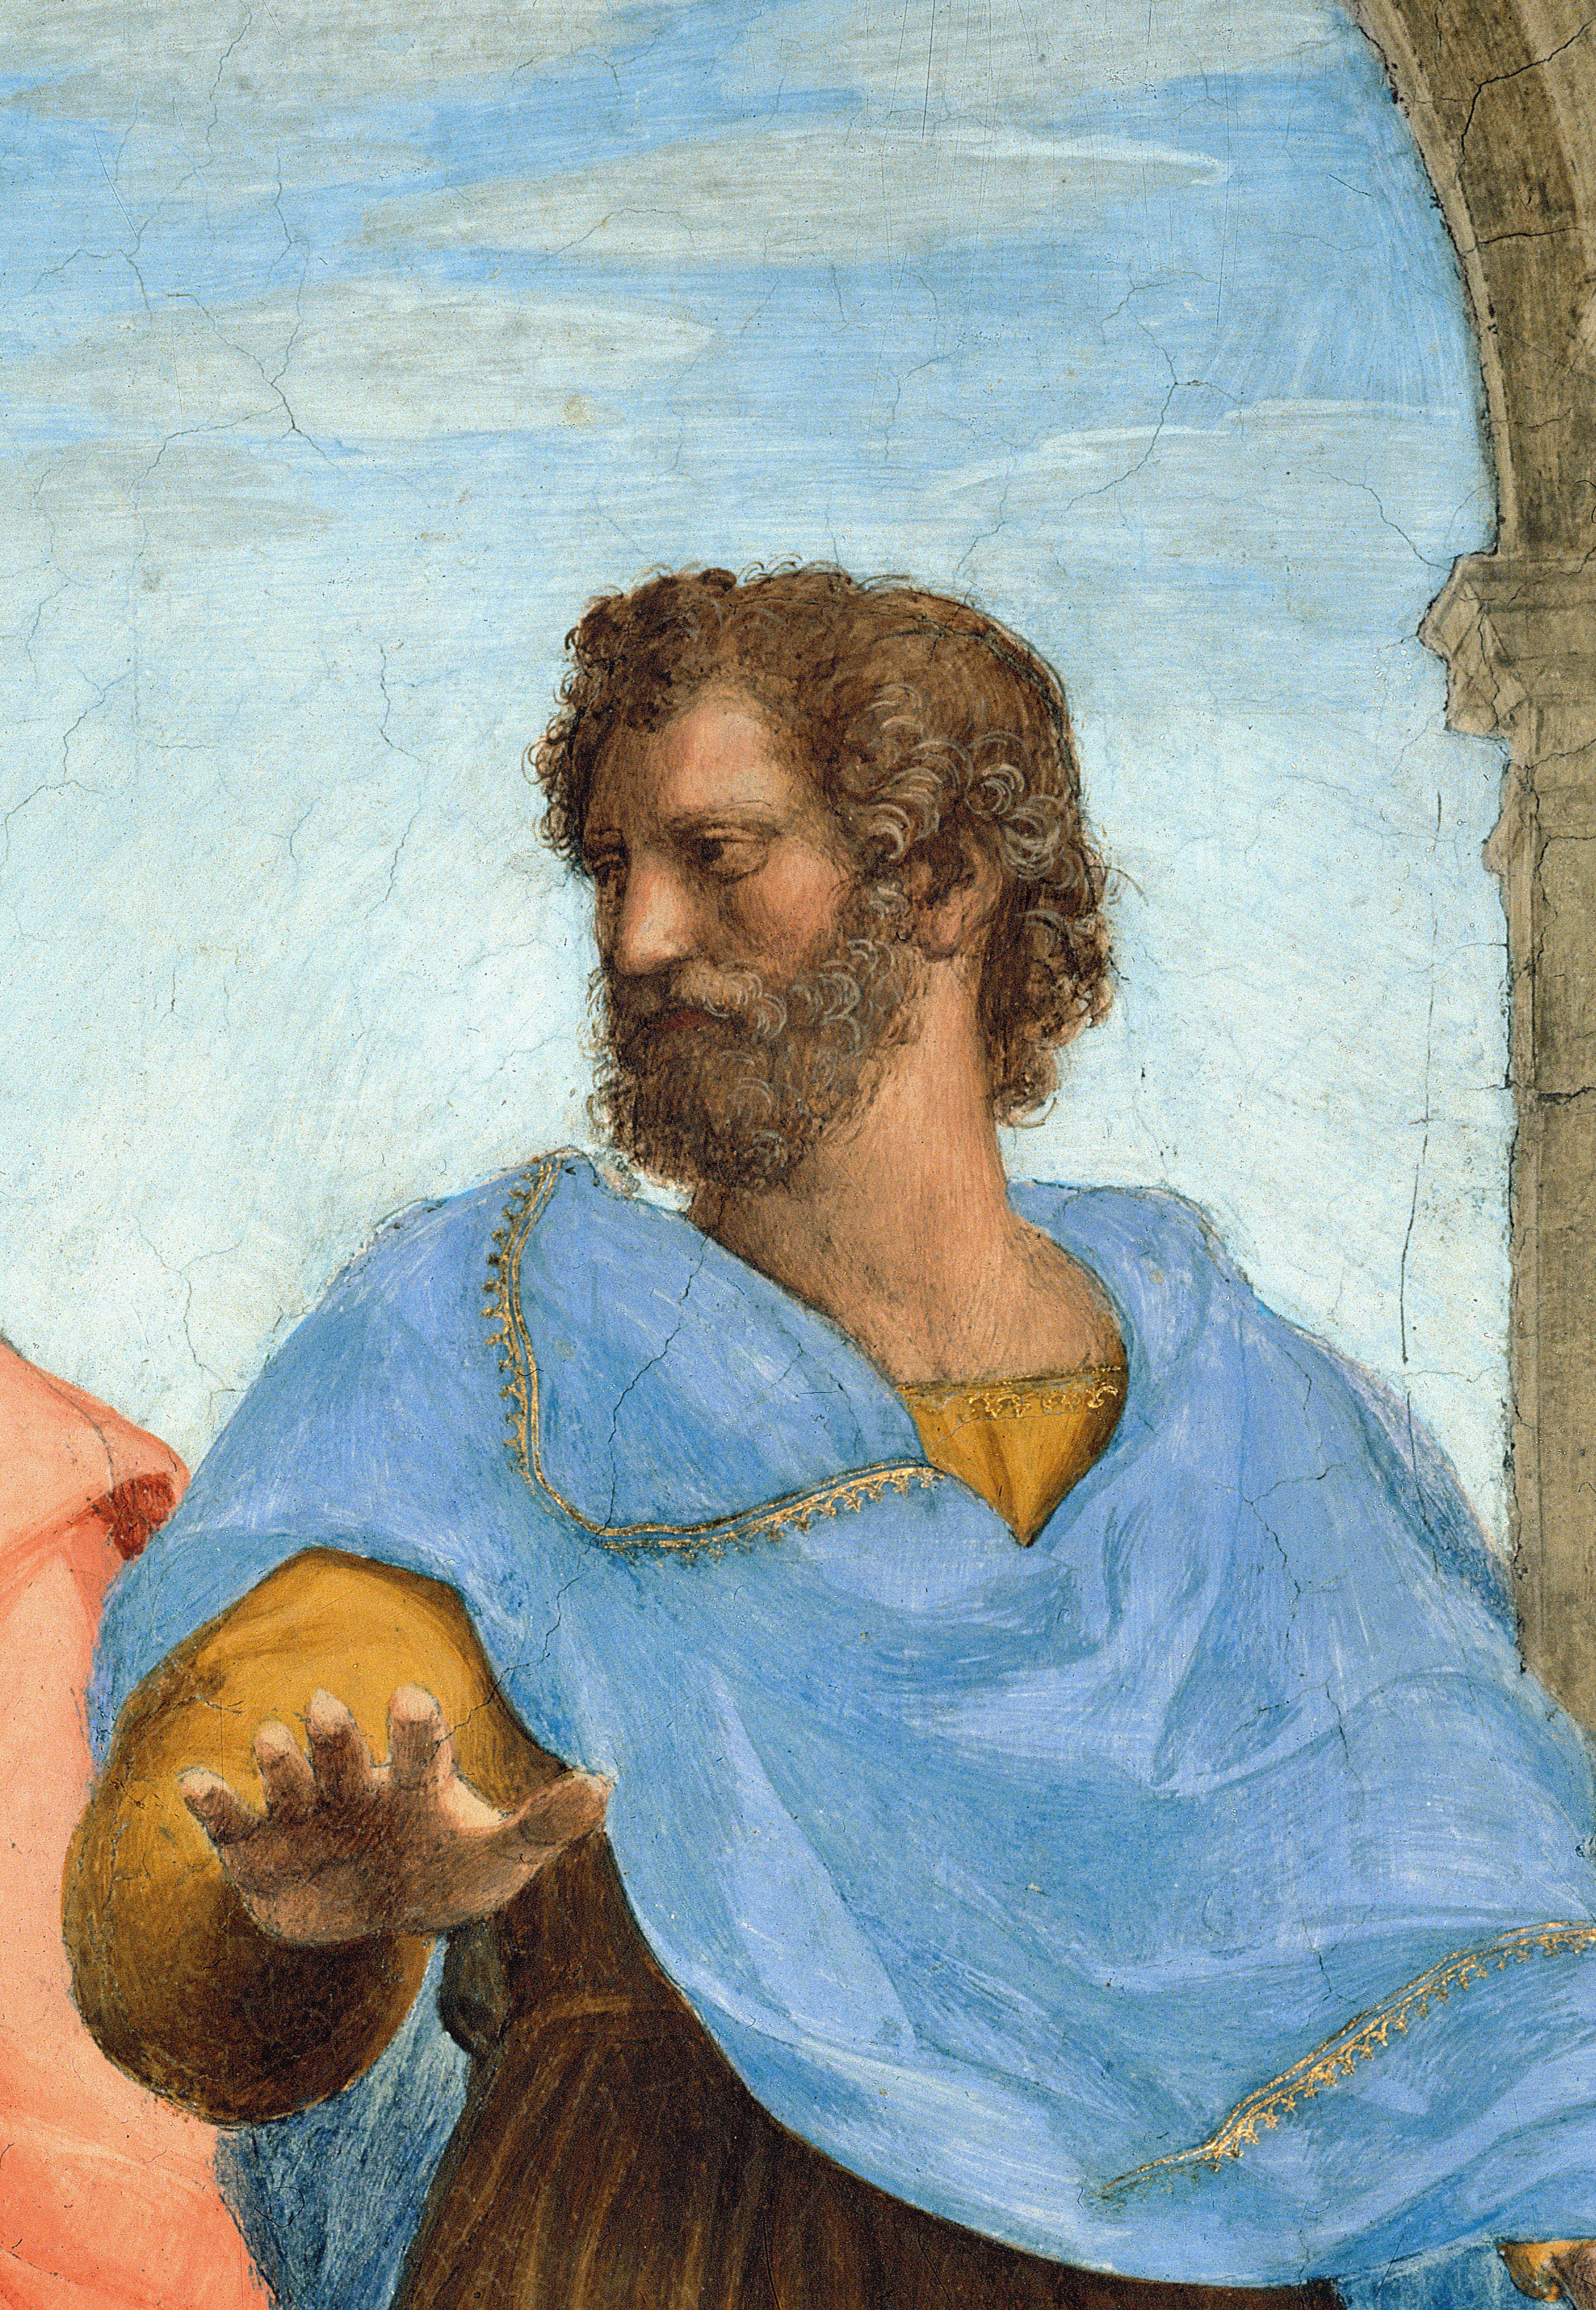 Arisztotelész görög filozófus Raffaello Az athéni iskola című festményén